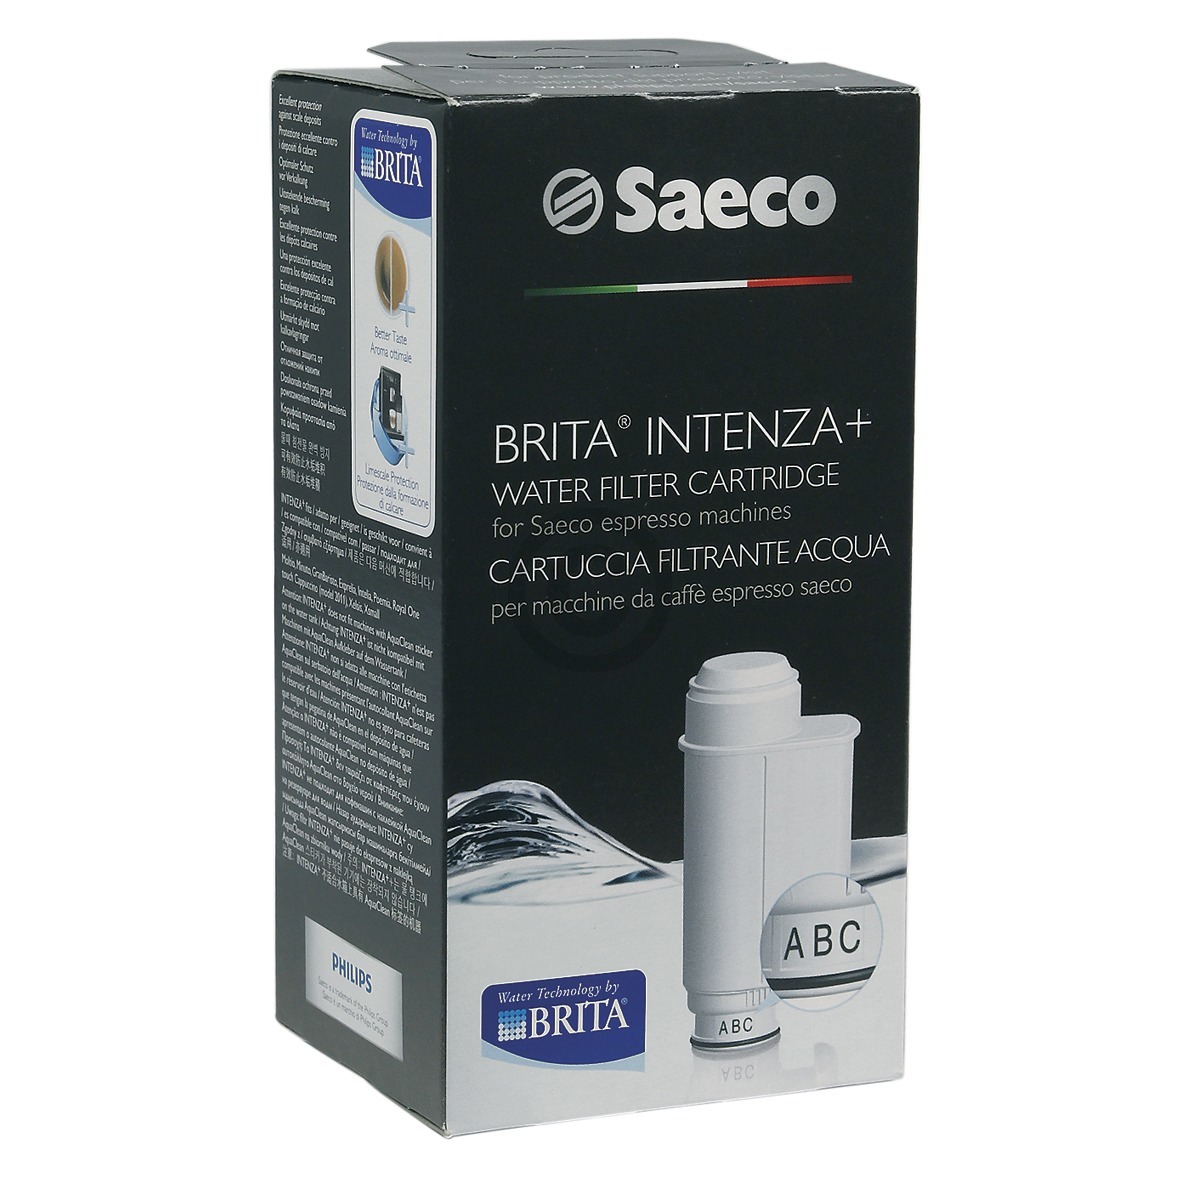 Wasserfilter PHILIPS Saeco 996530071872 BRITA® Intenza+ für Kaffeemaschine